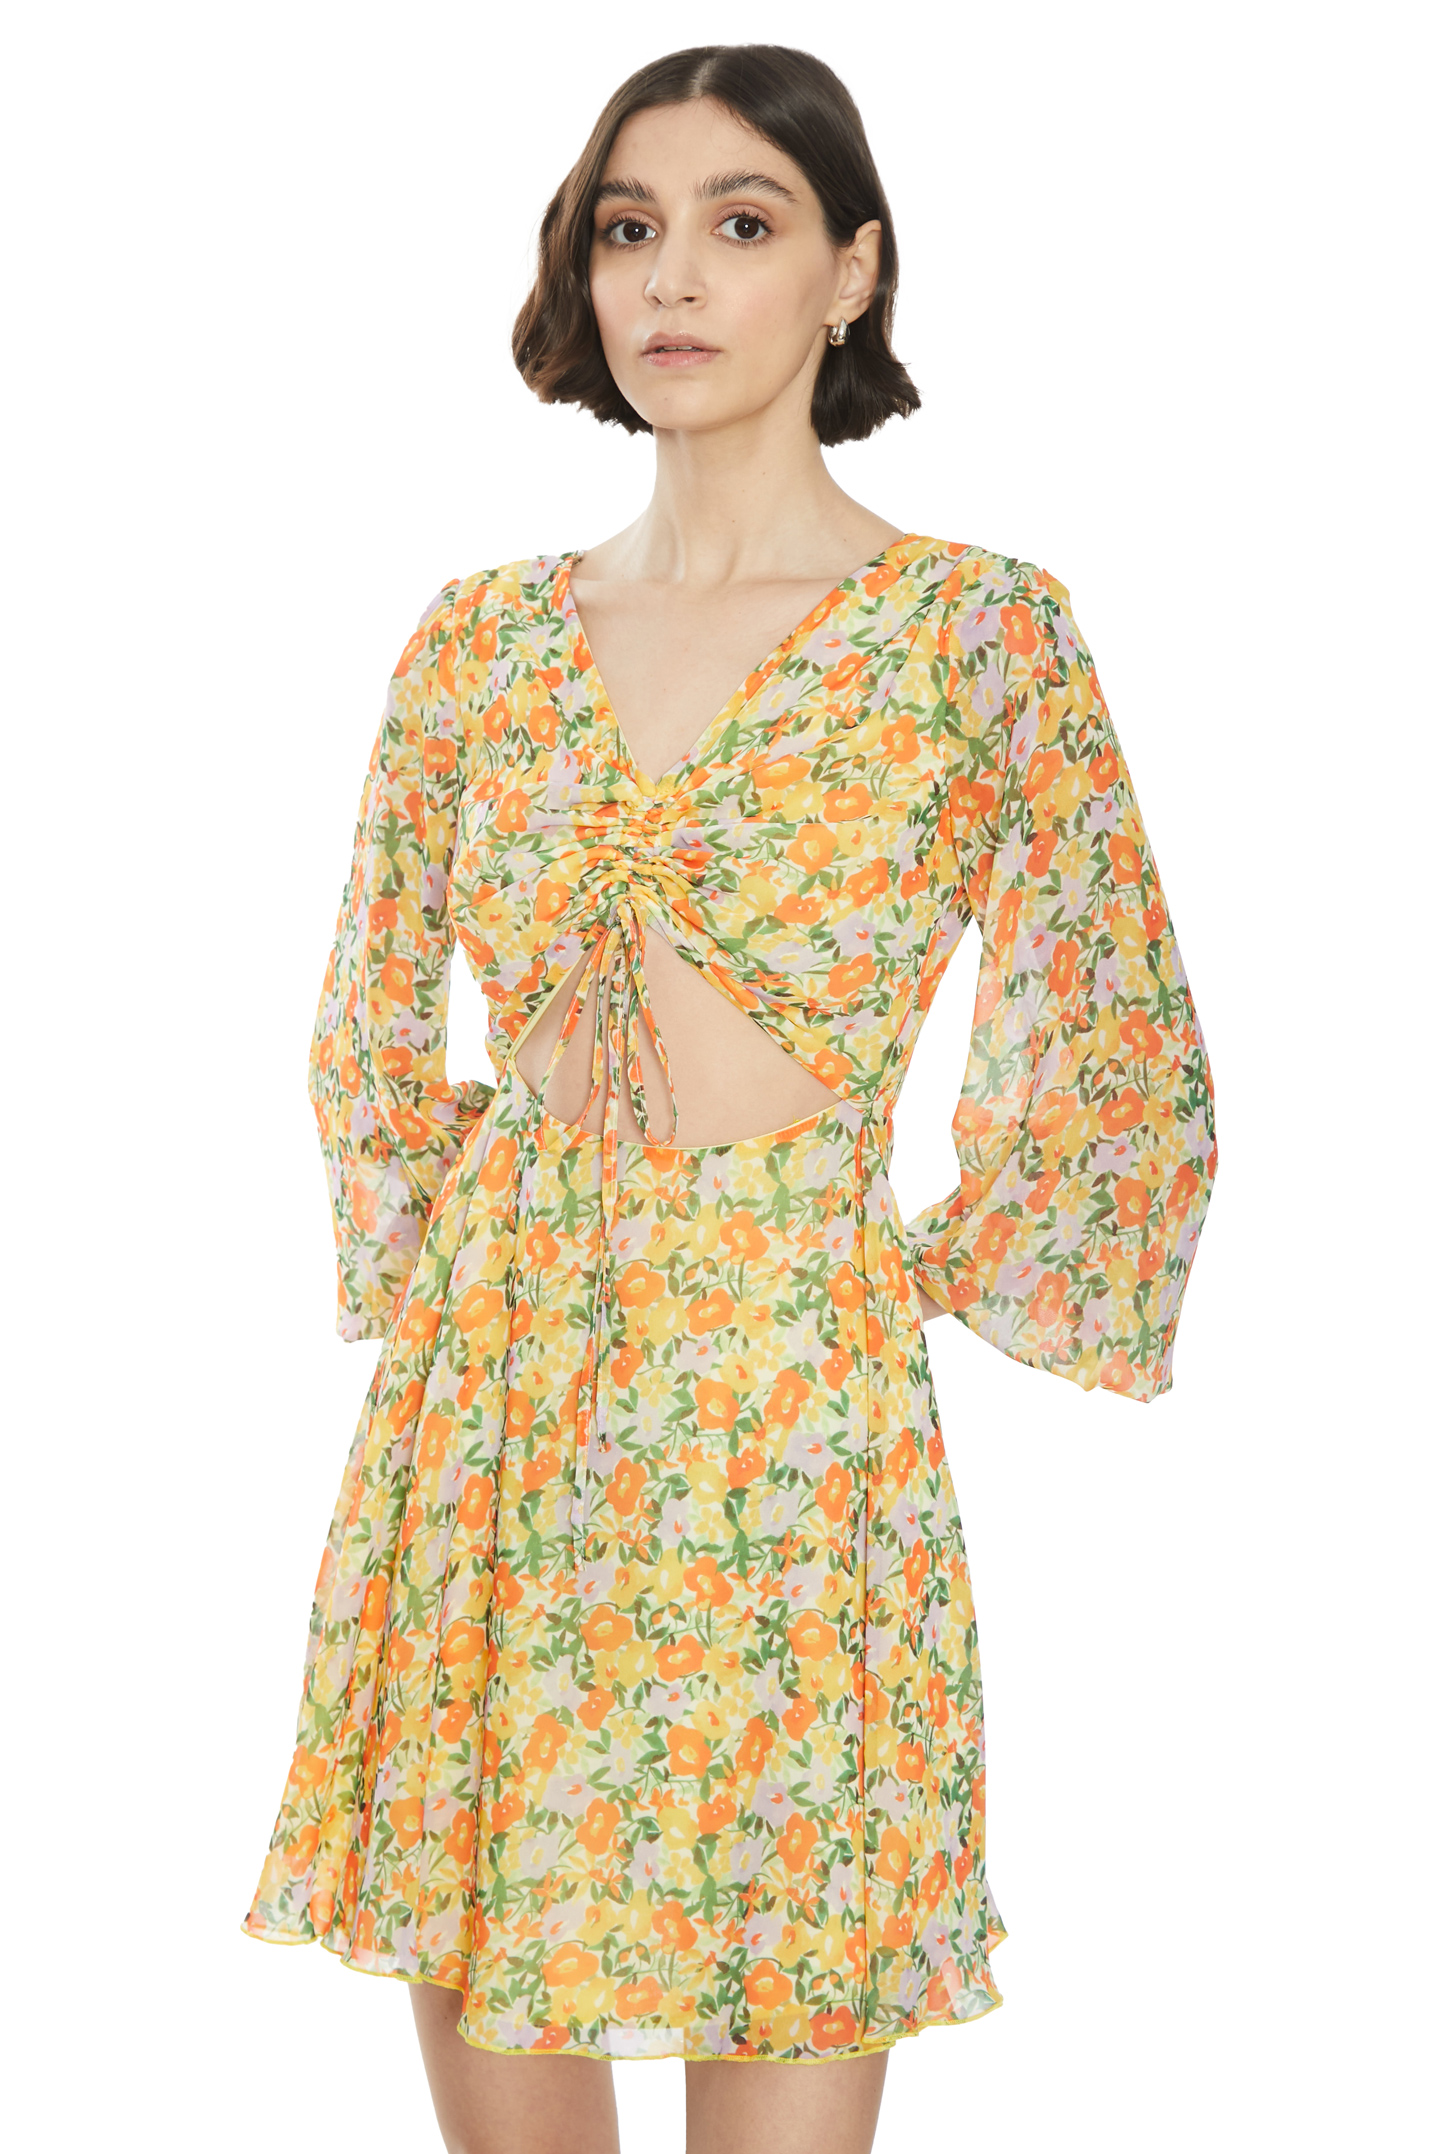 Patterned chiffon sleeveless mini dress